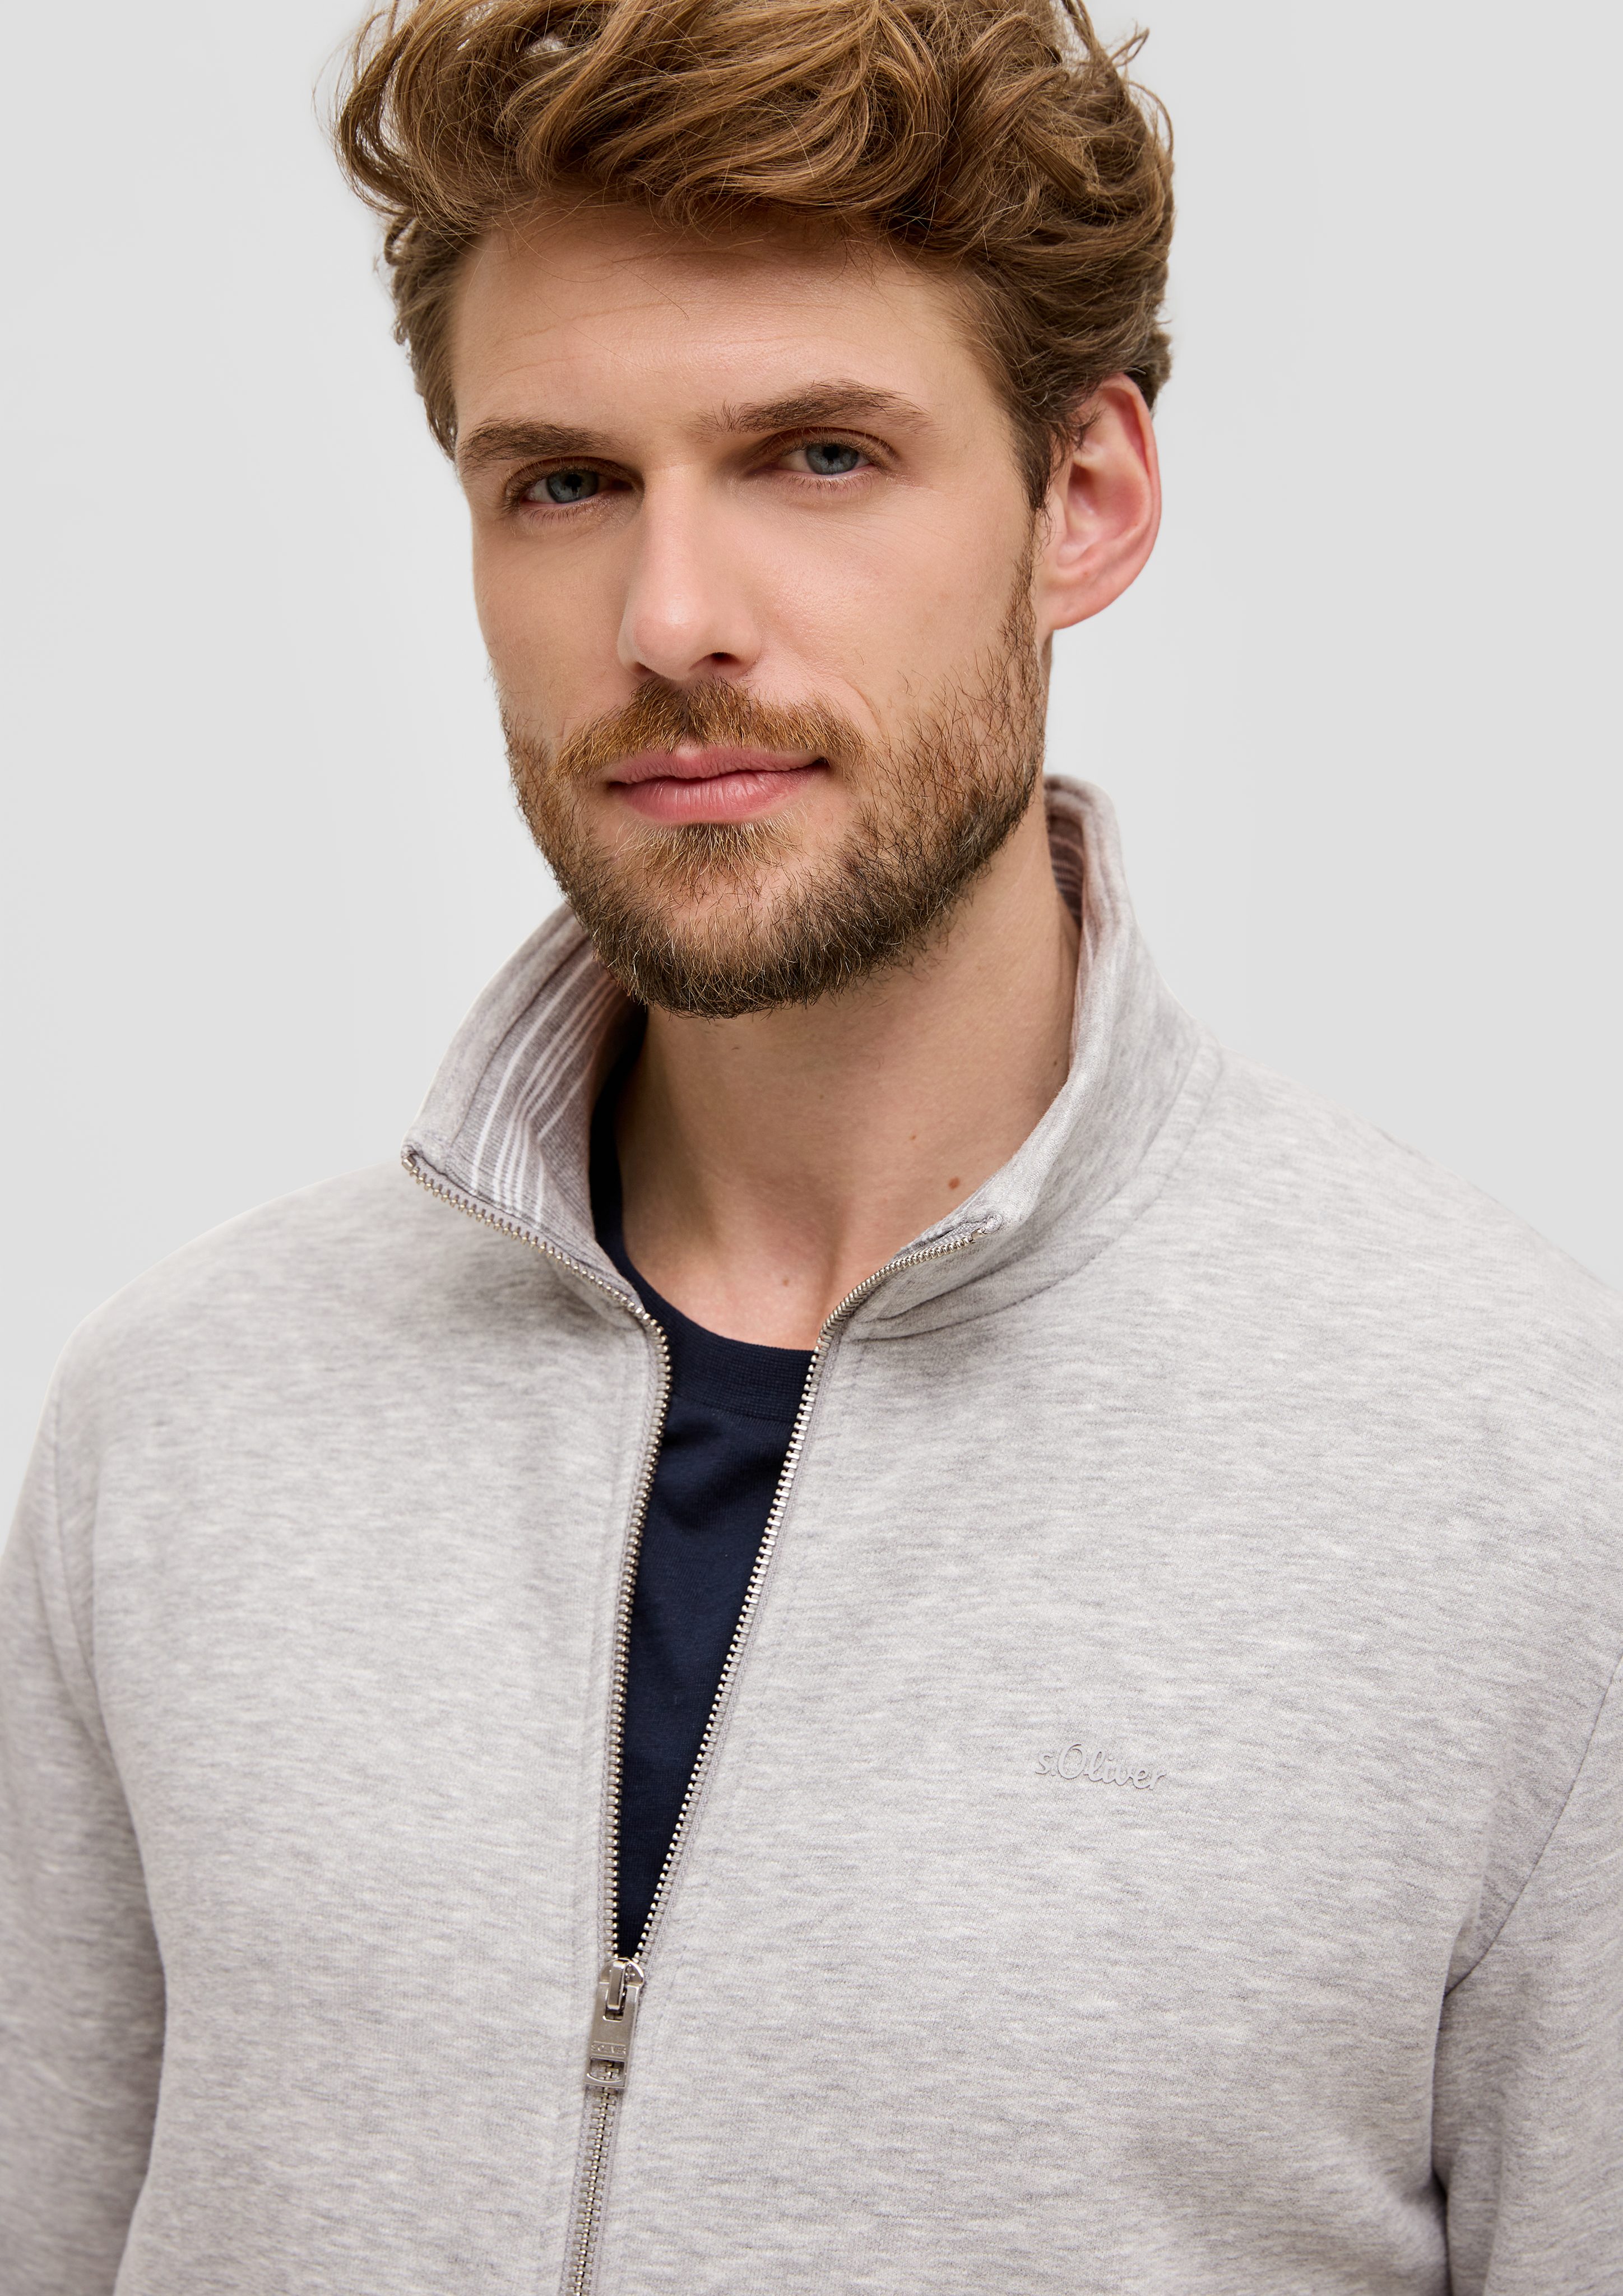 grau Allwetterjacke Sweatshirt-Jacke meliert Stehkragen s.Oliver Logo, Streifen-Detail mit